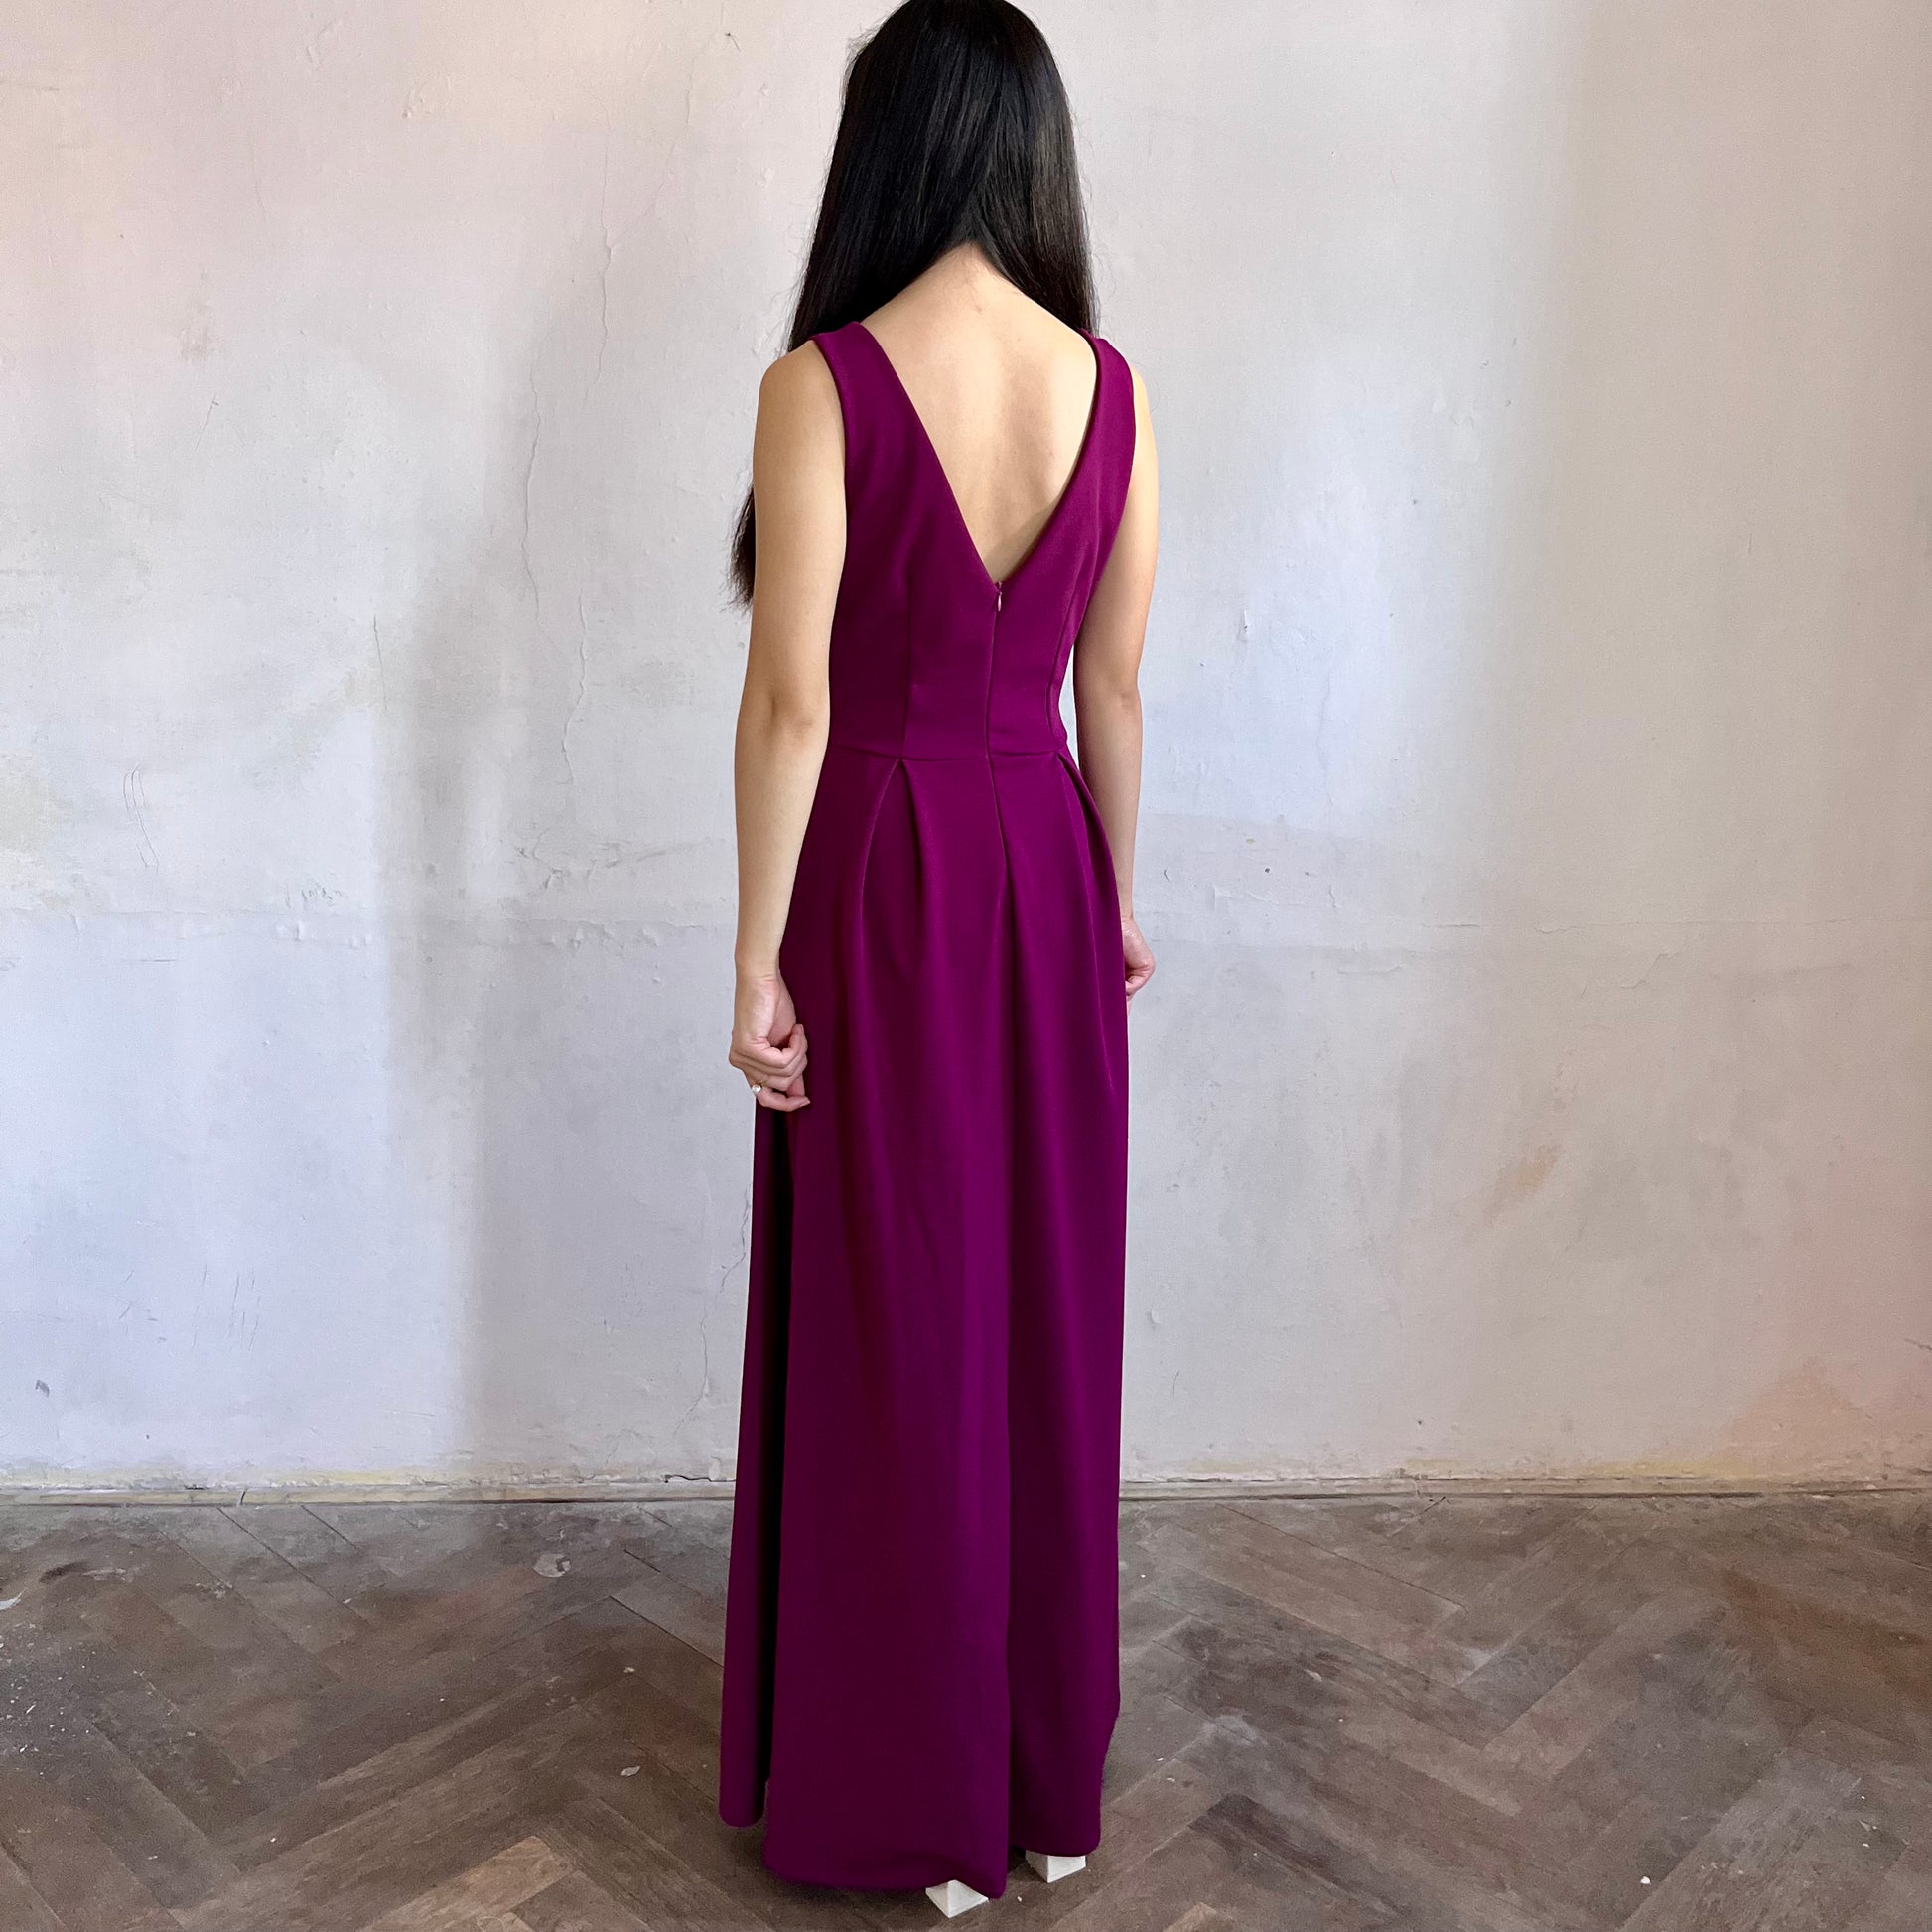 Modelka asijského původu pózující z boku oblečená ve fialových společenských šatech